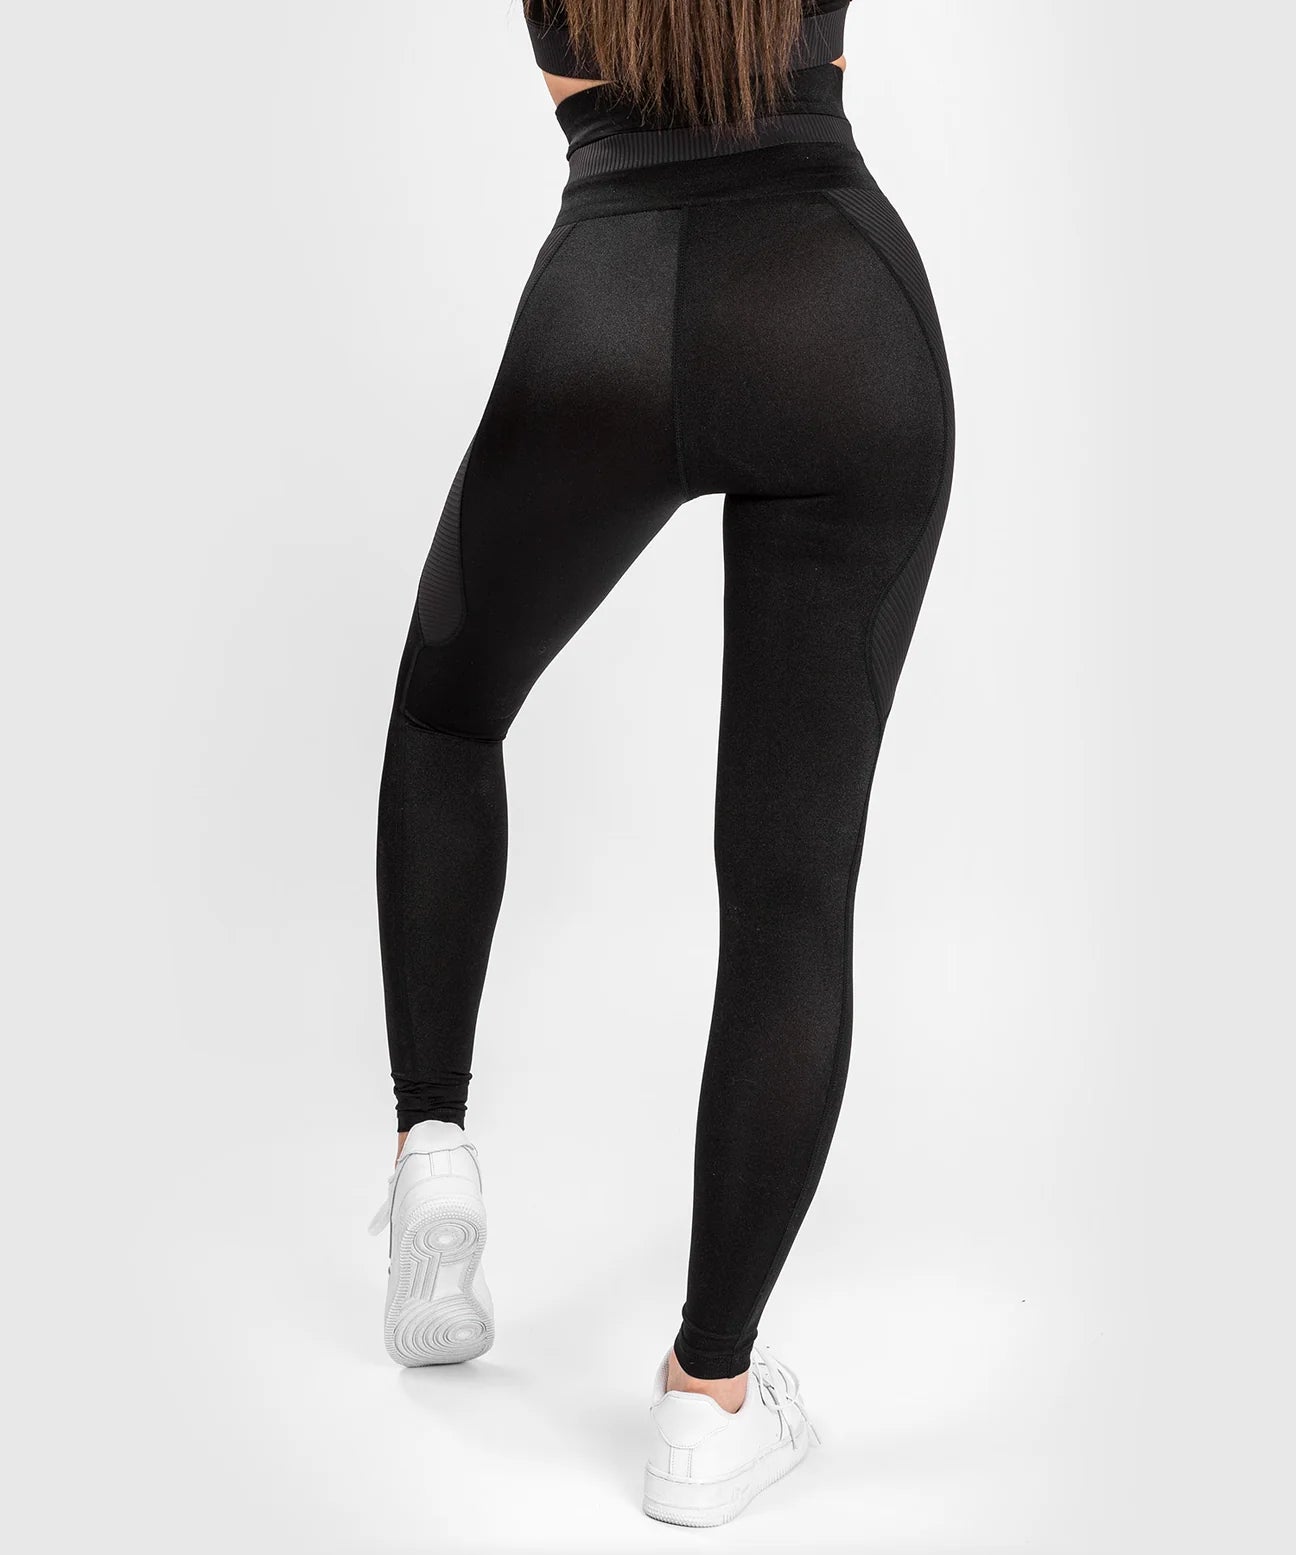 Venum Power 2.0 leggings Ladies Black White